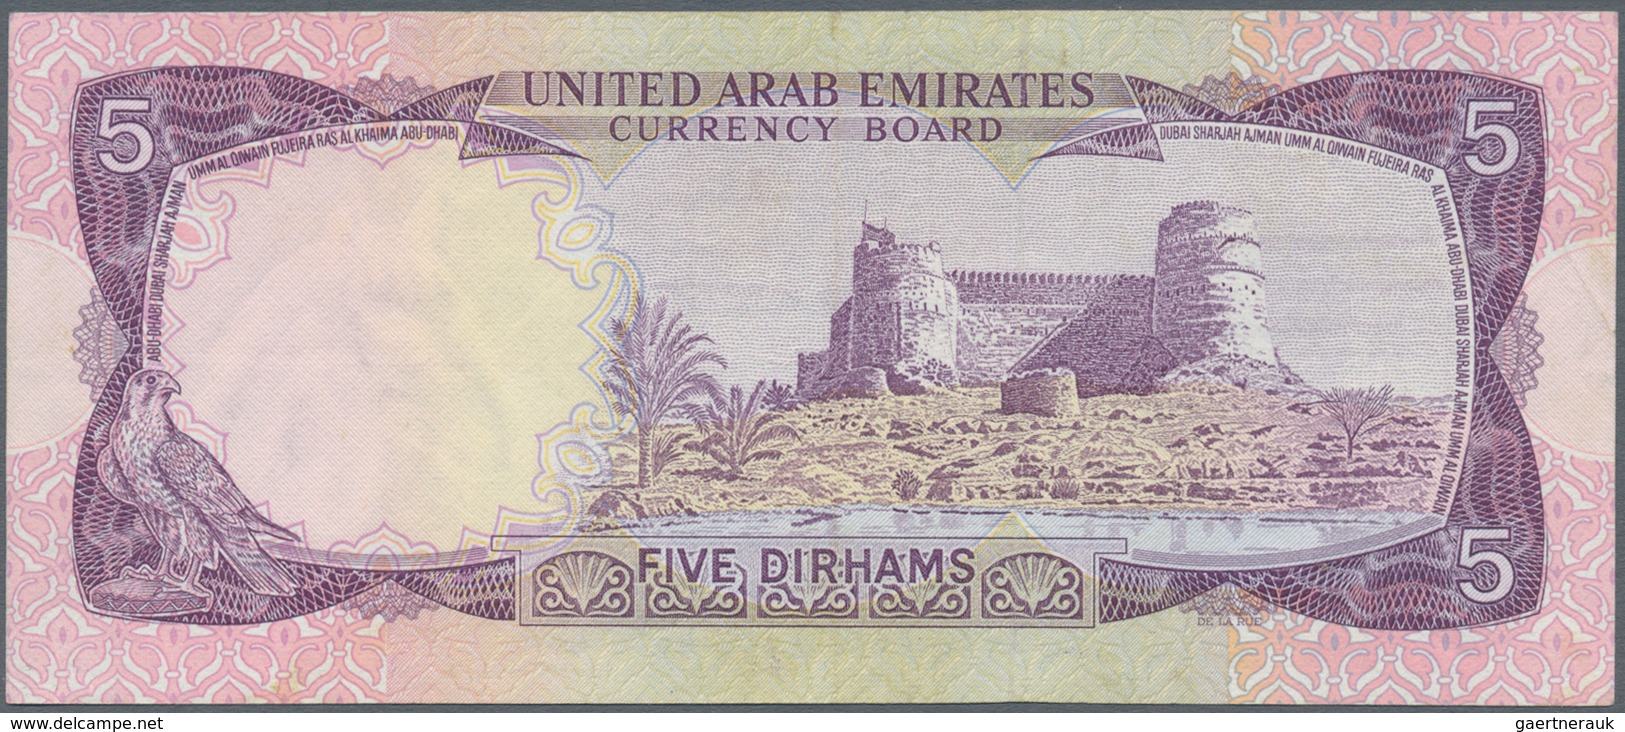 02572 United Arab Emirates / Vereinigte Arabische Emirate: Set Of 2 Banknotes 5 And 10 Dirhams ND(1973) P. - Emiratos Arabes Unidos